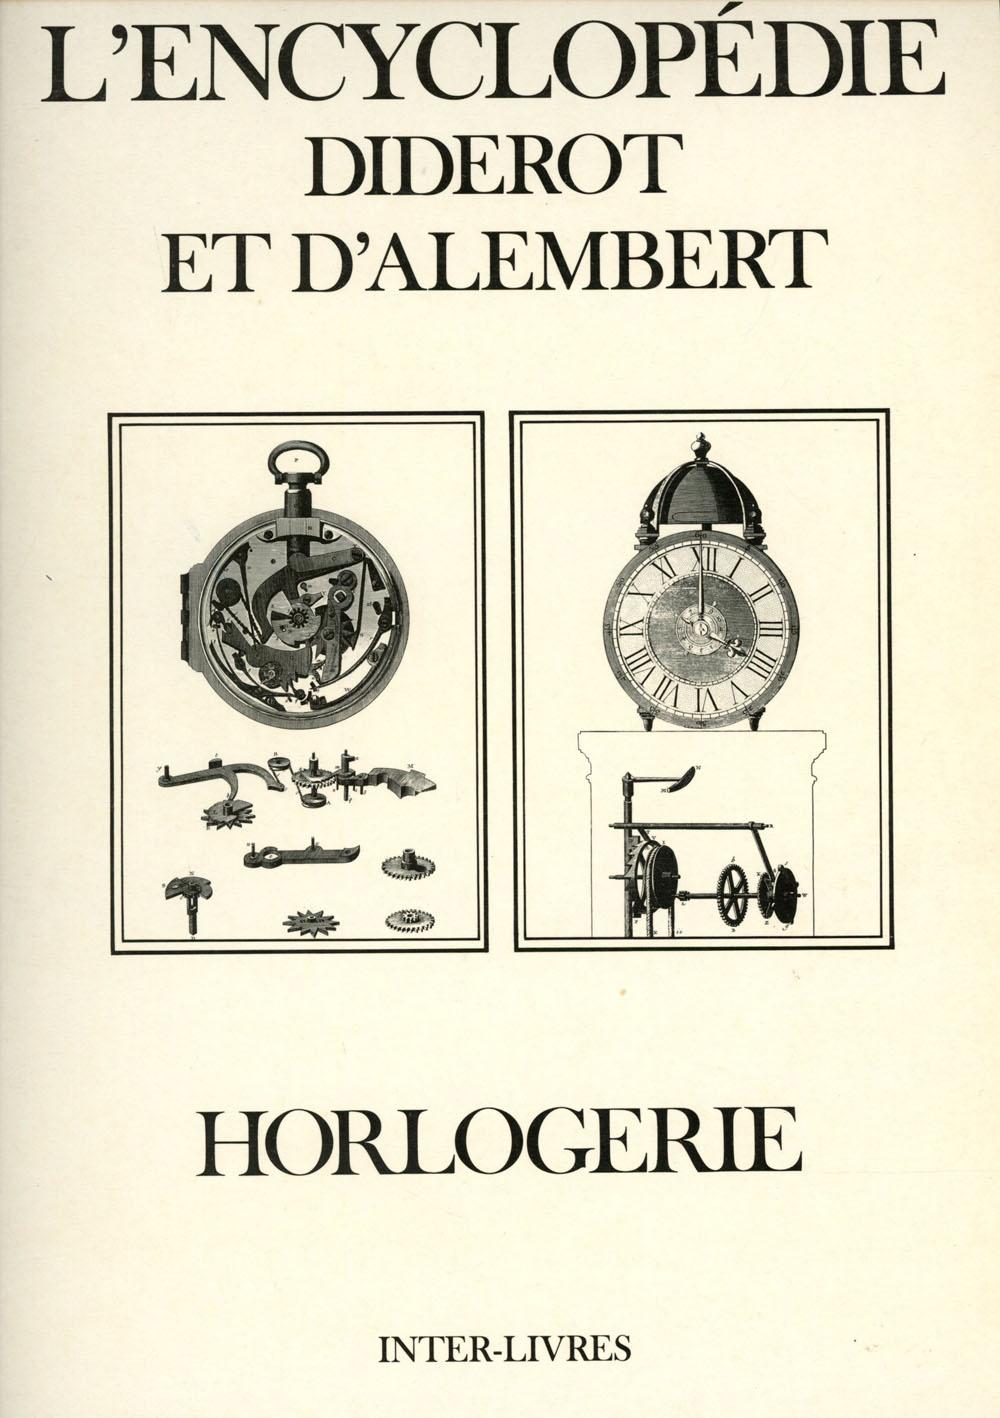 L'Encyclopedie Diderot et D'Alembert; Recueil de Planches sur les Sciences, les arts Liberaux et les Arts Mecaniques, avec leur Explication; Horlogerie